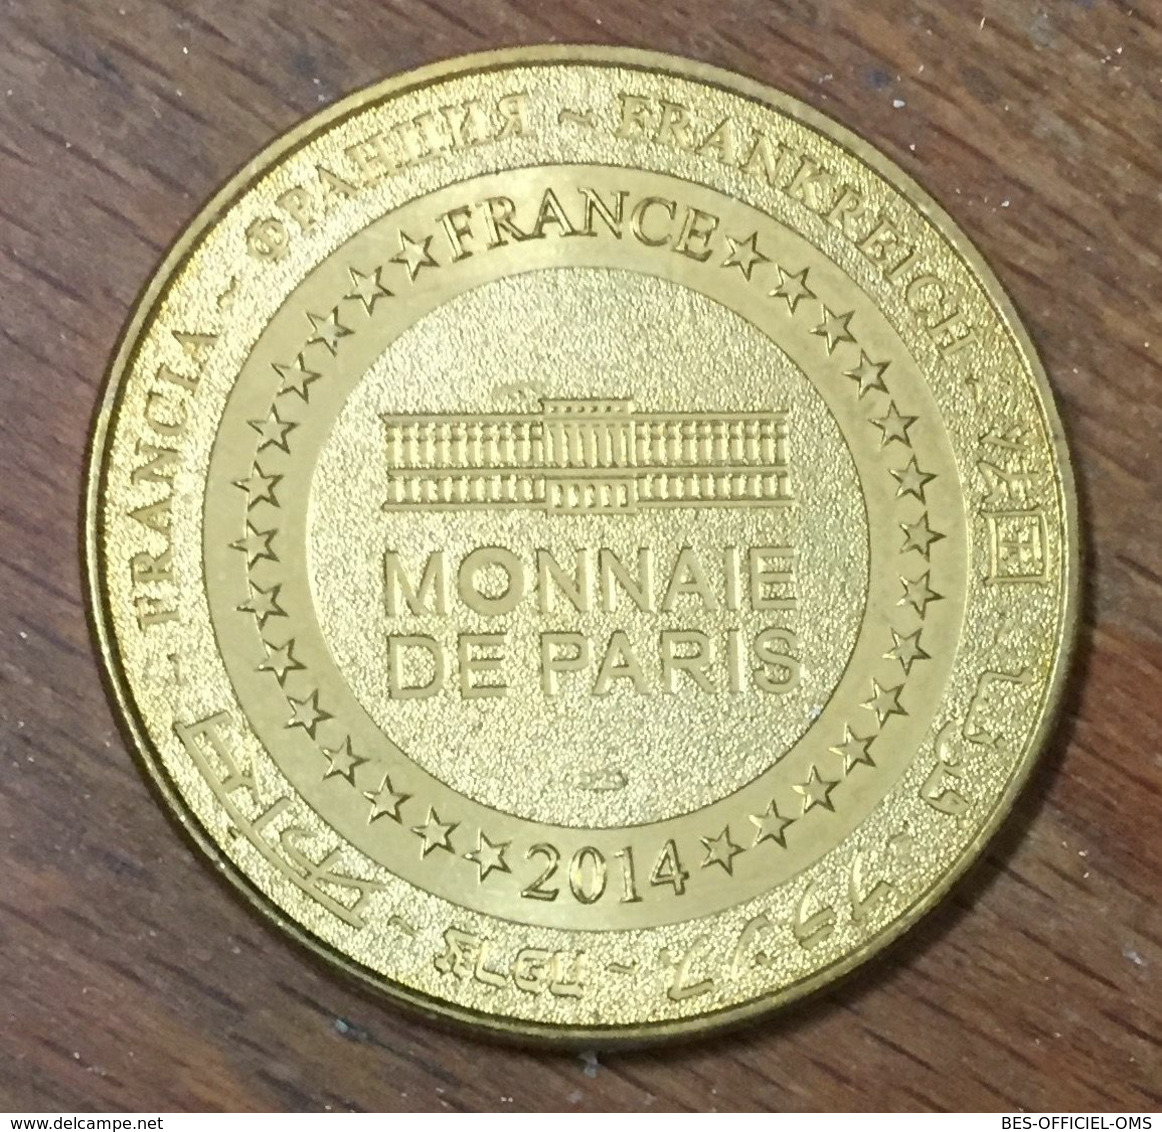 77 MEAUX CATHÉDRALE SAINT-ÉTIENNE MDP 2014 MÉDAILLE SOUVENIR MONNAIE DE PARIS JETON TOURISTIQUE MEDALS COINS TOKENS - 2014